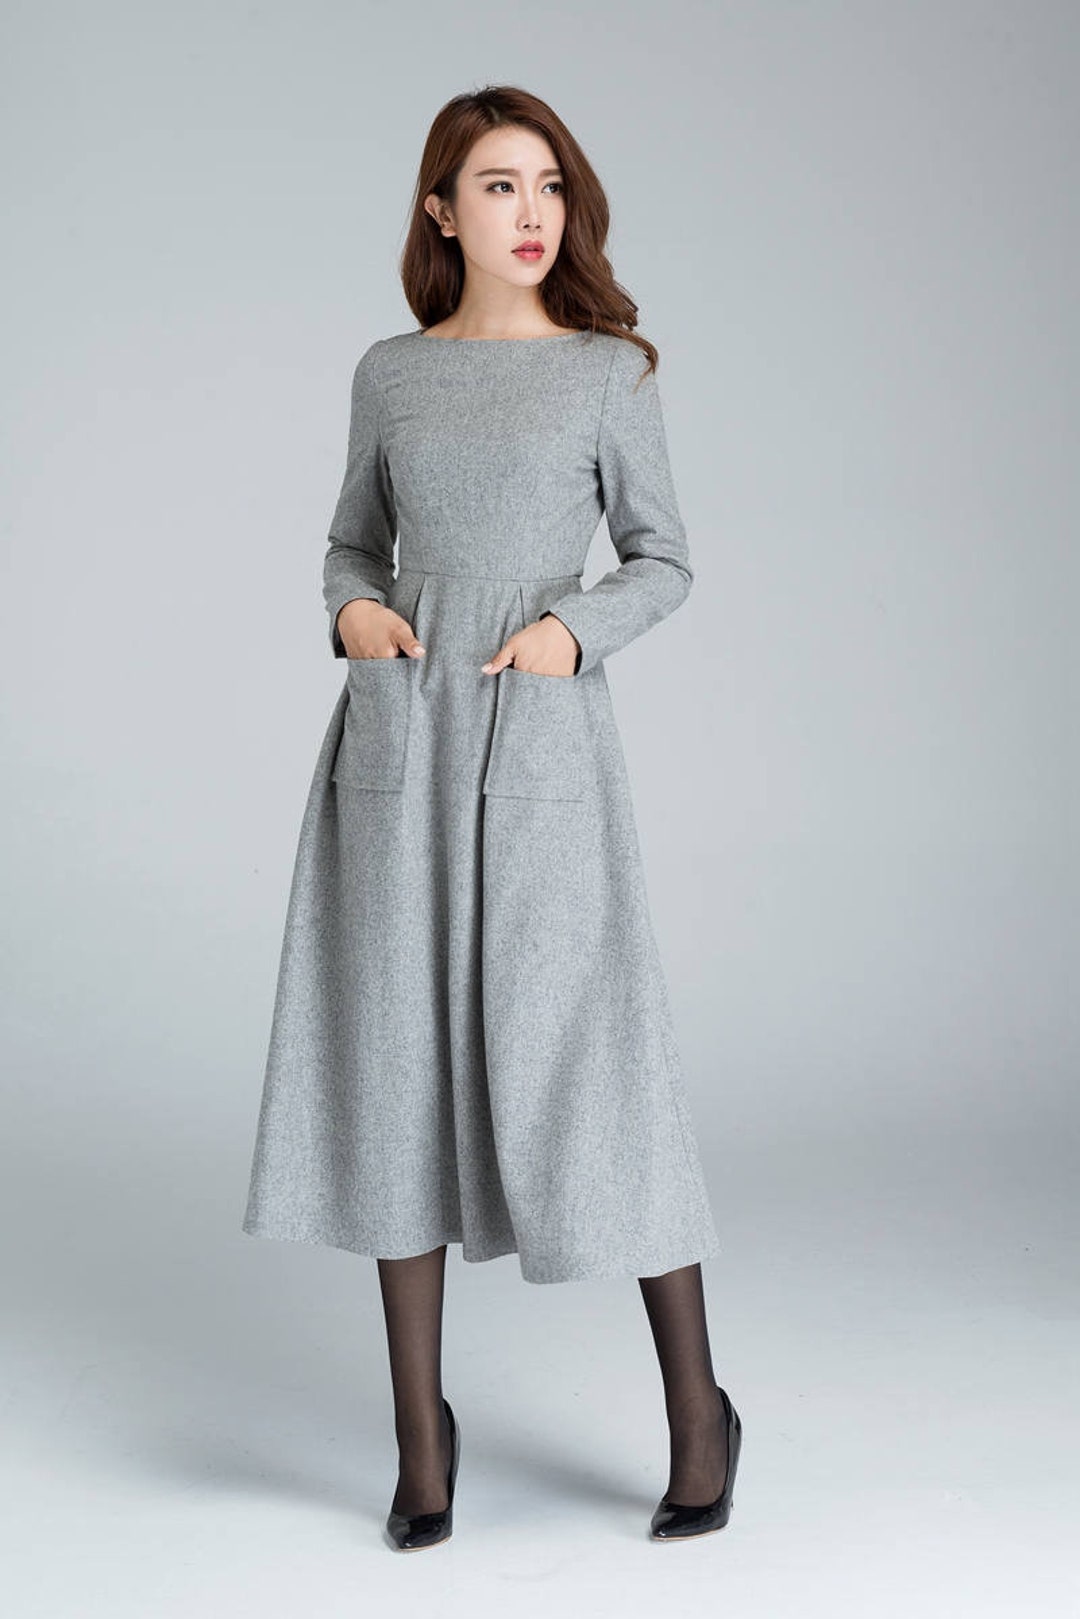 Wool Dress, Dress With Pockets, Light Grey Dress, Winter Dress ...